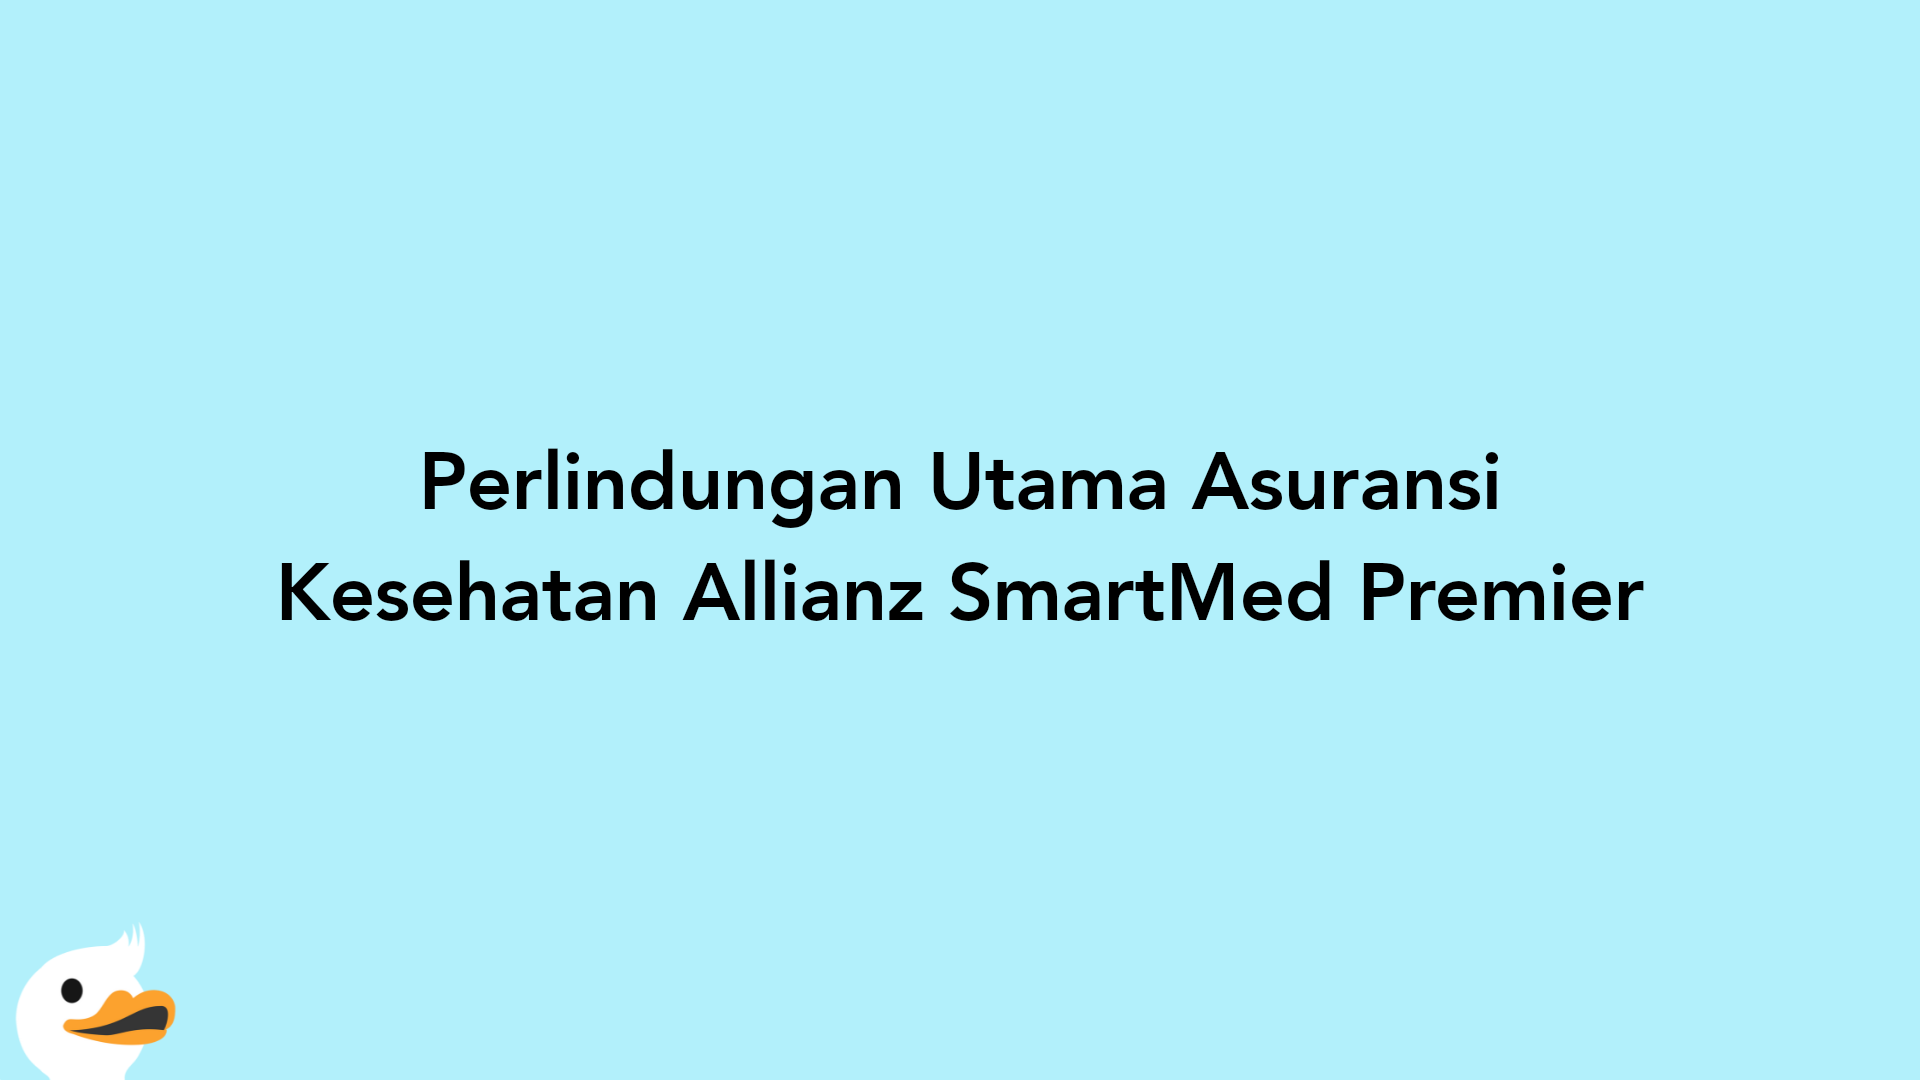 Perlindungan Utama Asuransi Kesehatan Allianz SmartMed Premier